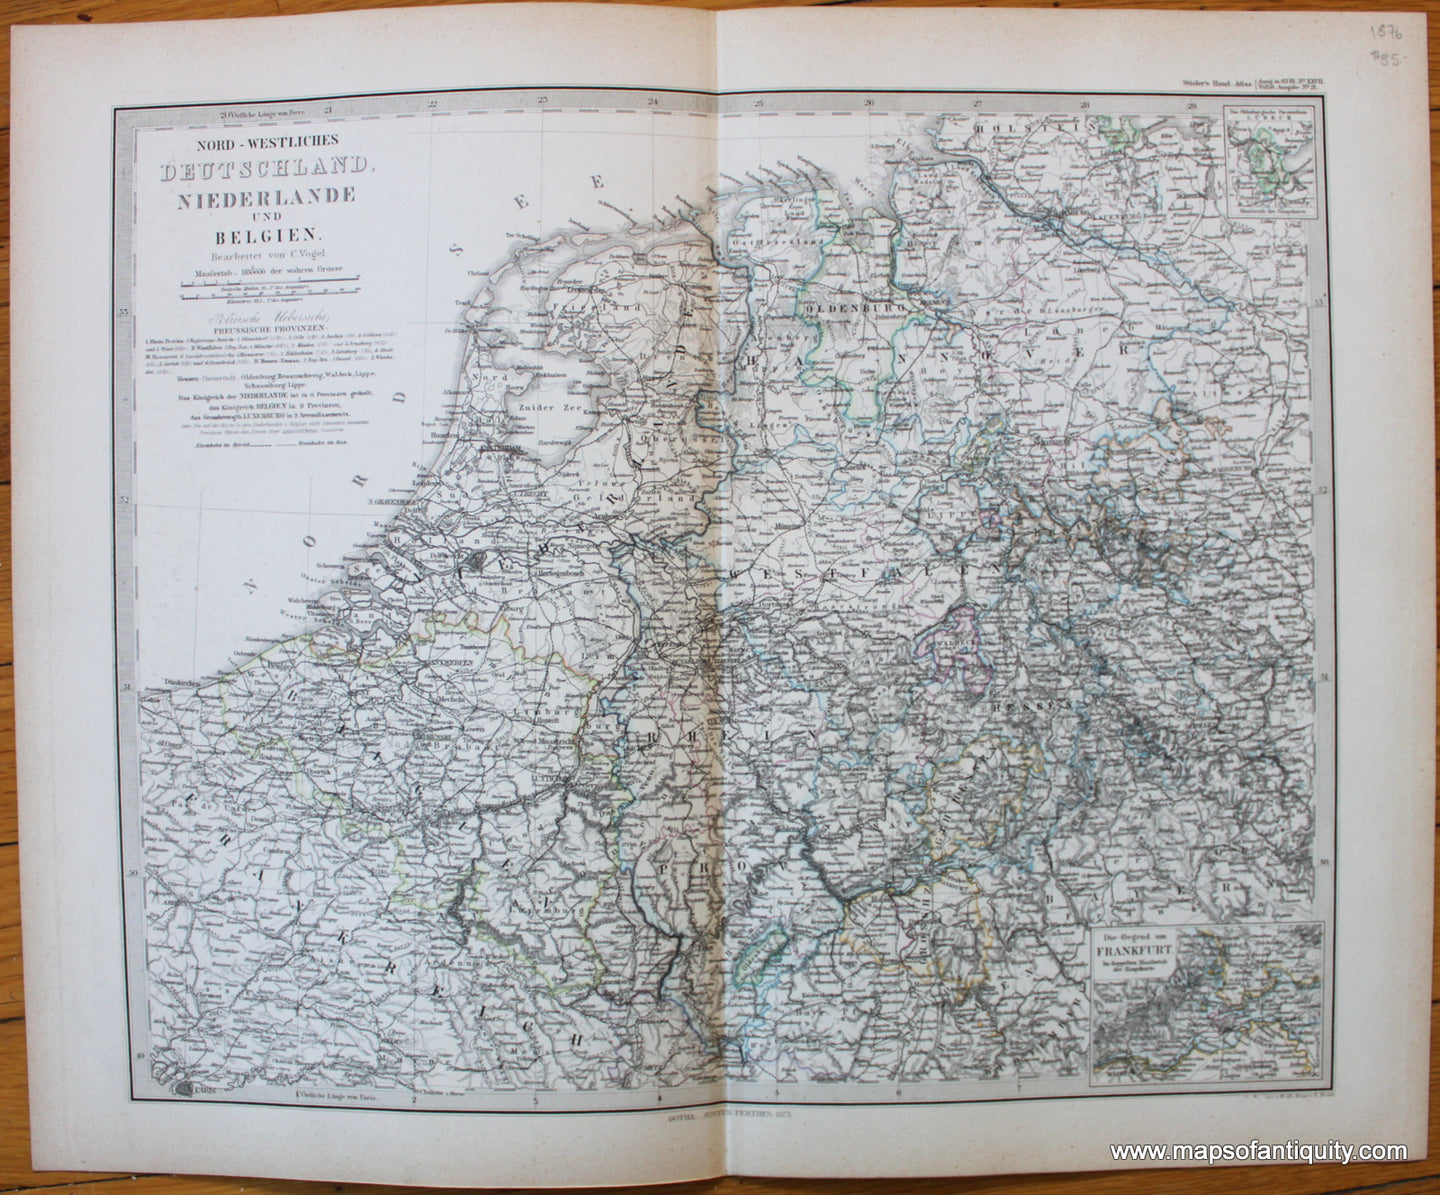 Antique-Map-Nord-Westliches-northewestern-Deutschland-Niederlande-Belgien-Germany-belgium-netherlands-Stieler-1876-1870s-1800s-19th-century-Maps-of-Antiquity